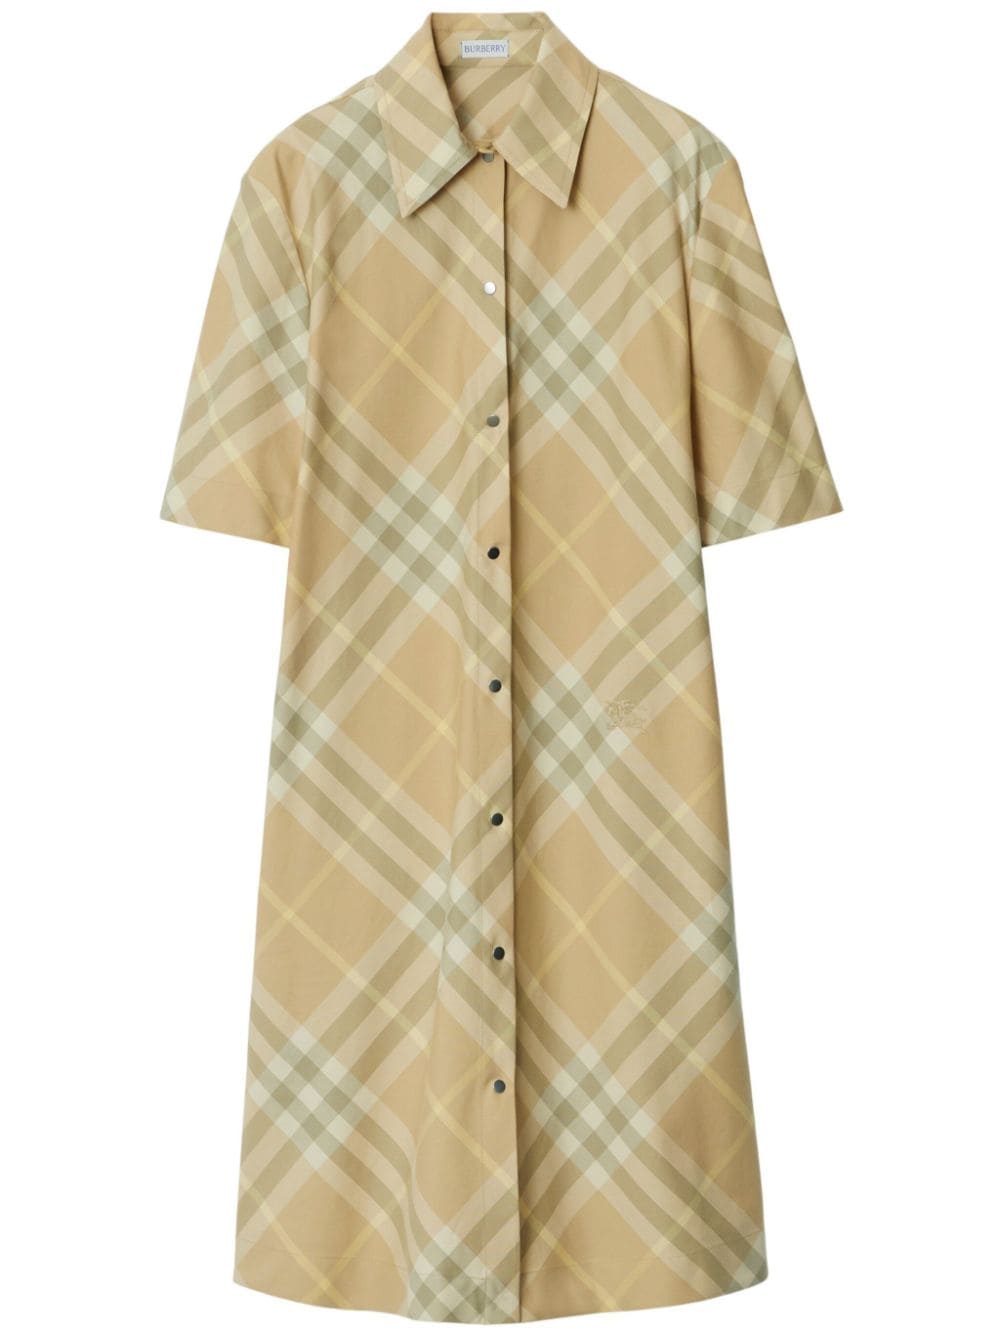 Vintage Check Cotton Dress - Beige